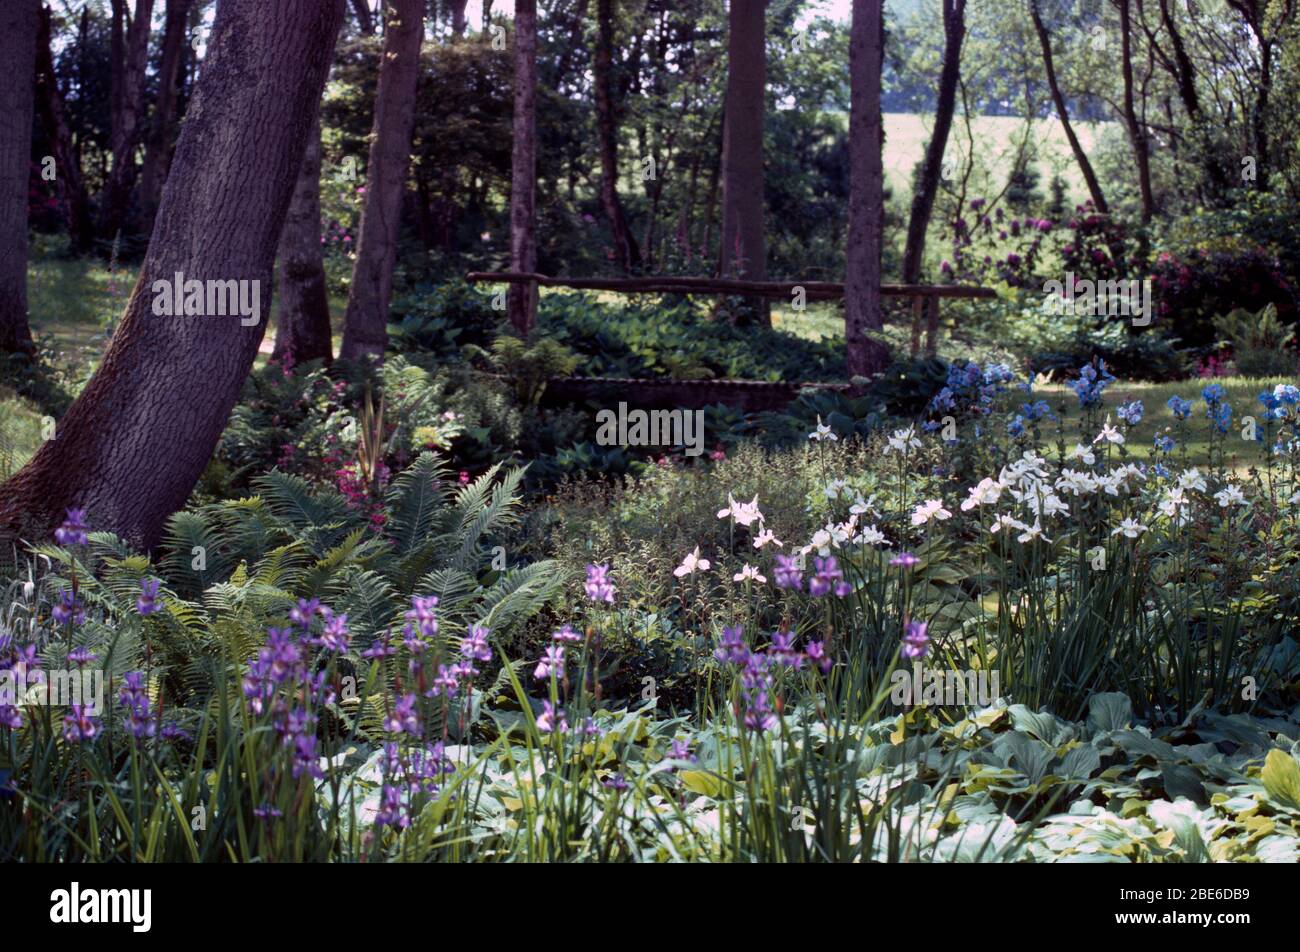 Traversez un jardin boisé avec des fougères, des iris bleus et blancs et des coquelicots bleu Himalaya. Banque D'Images